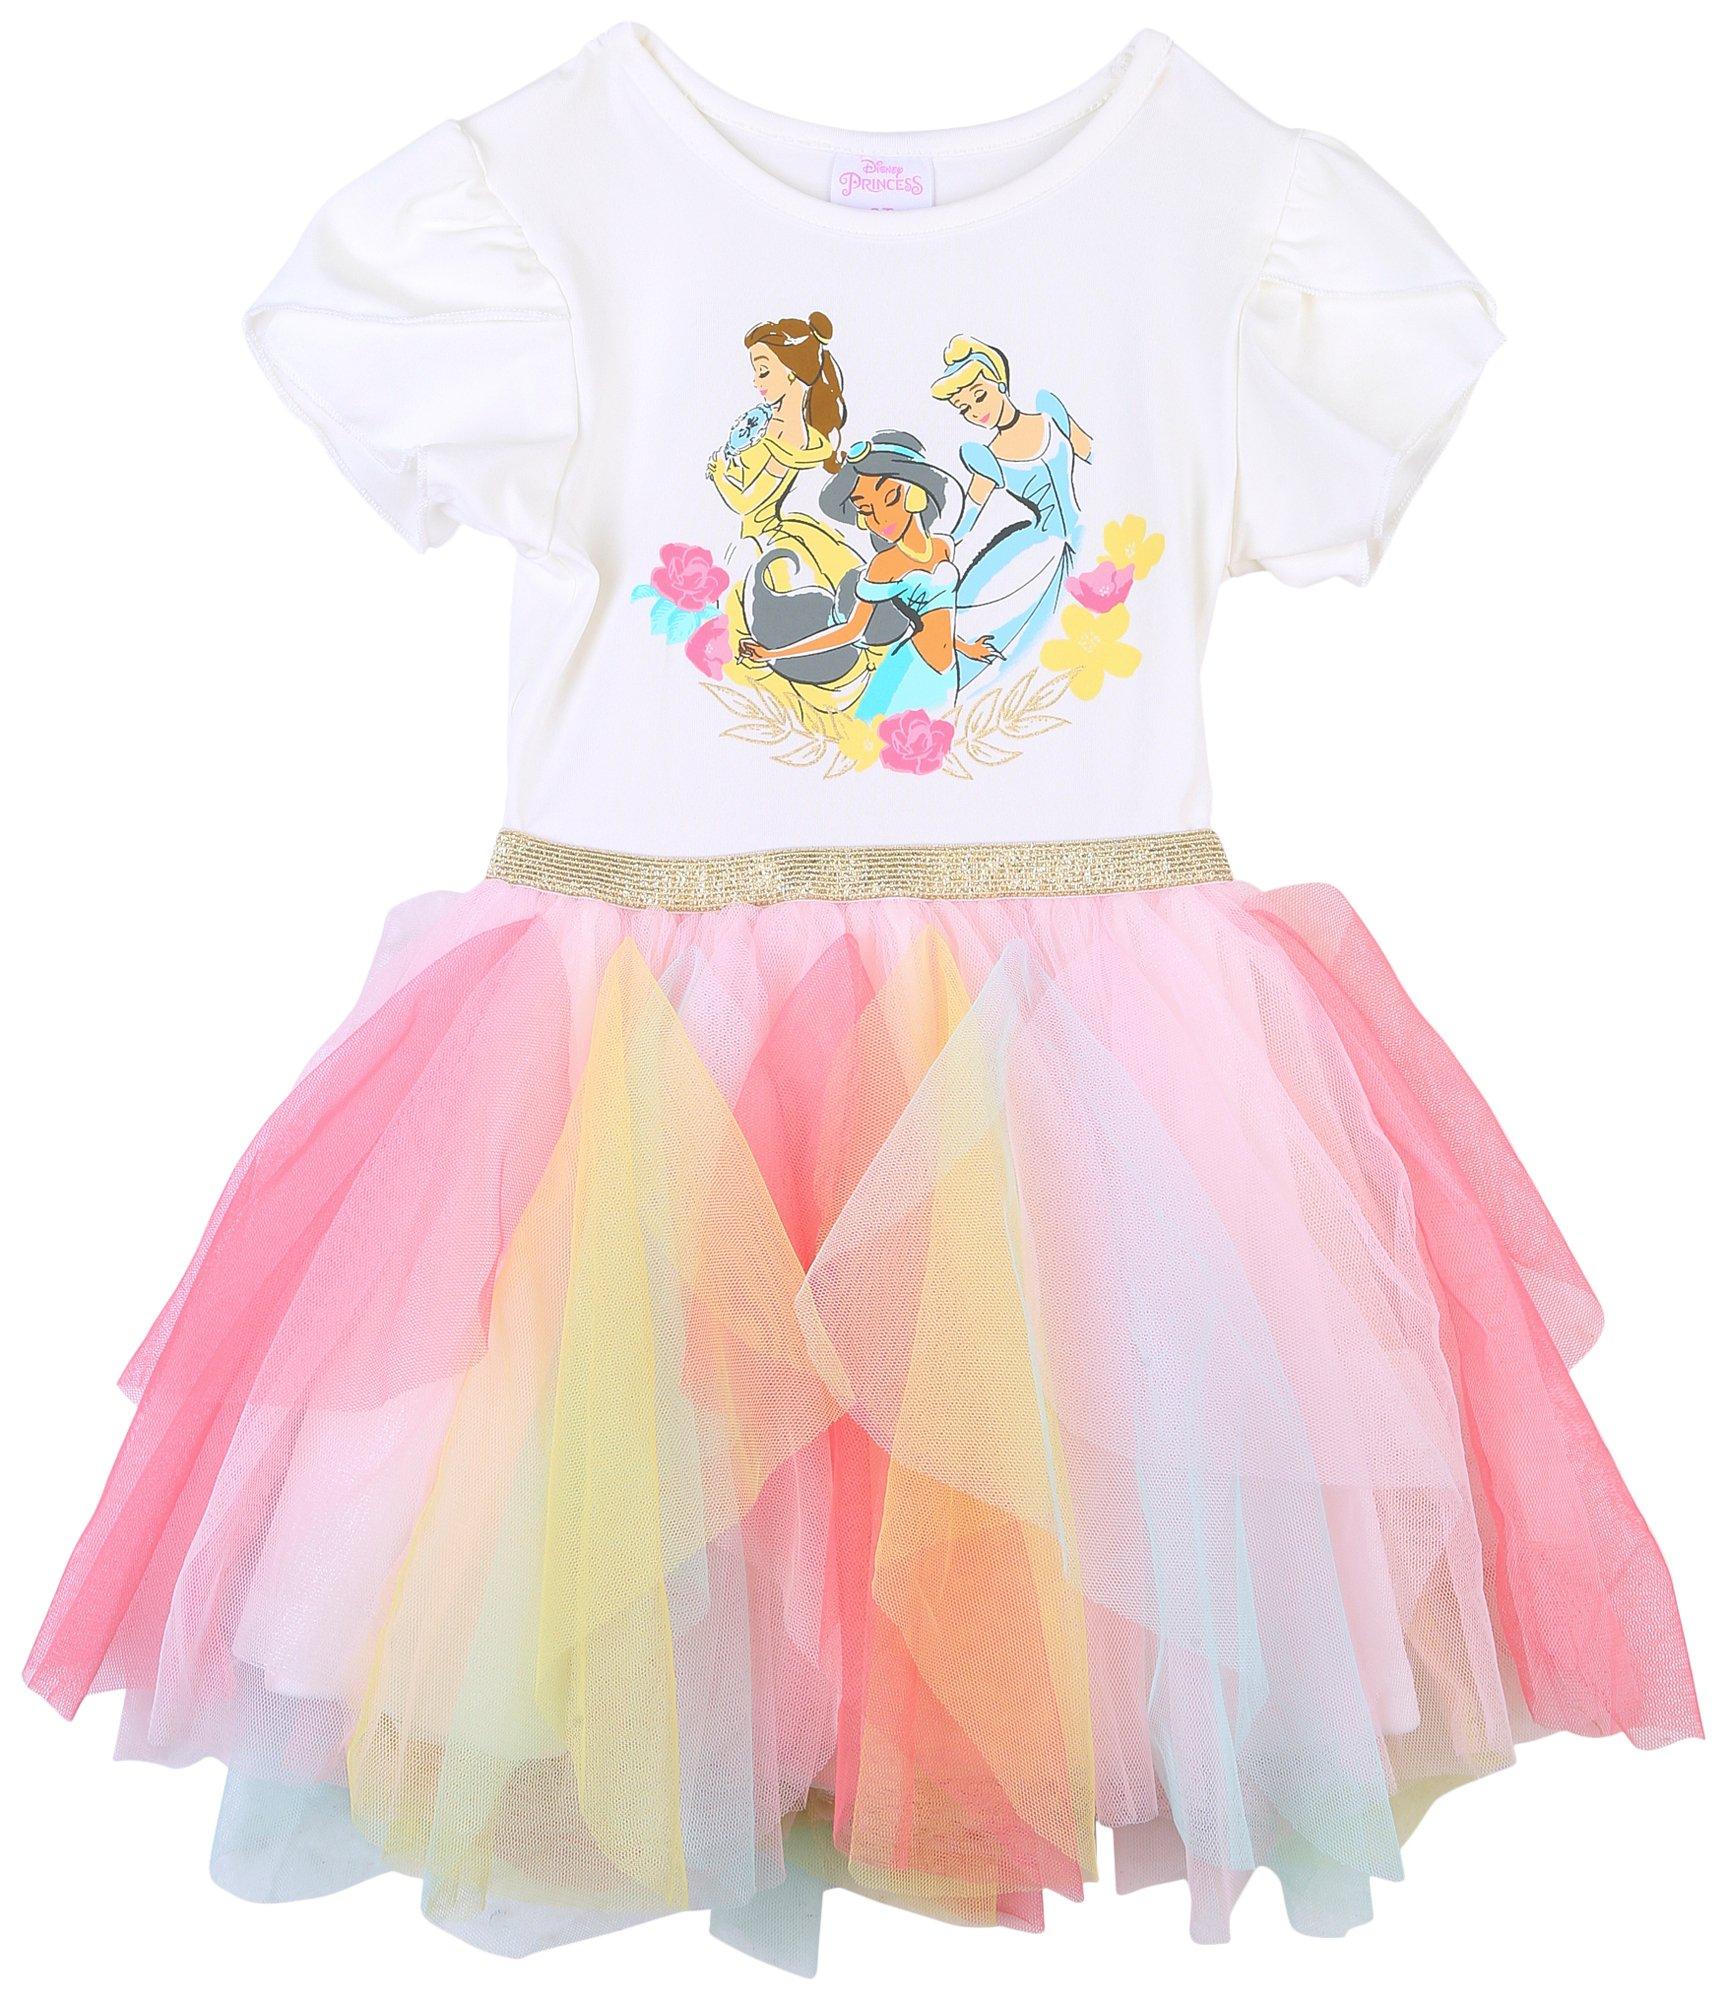 Toddler Girls Overlay Princesses Tutu Dress